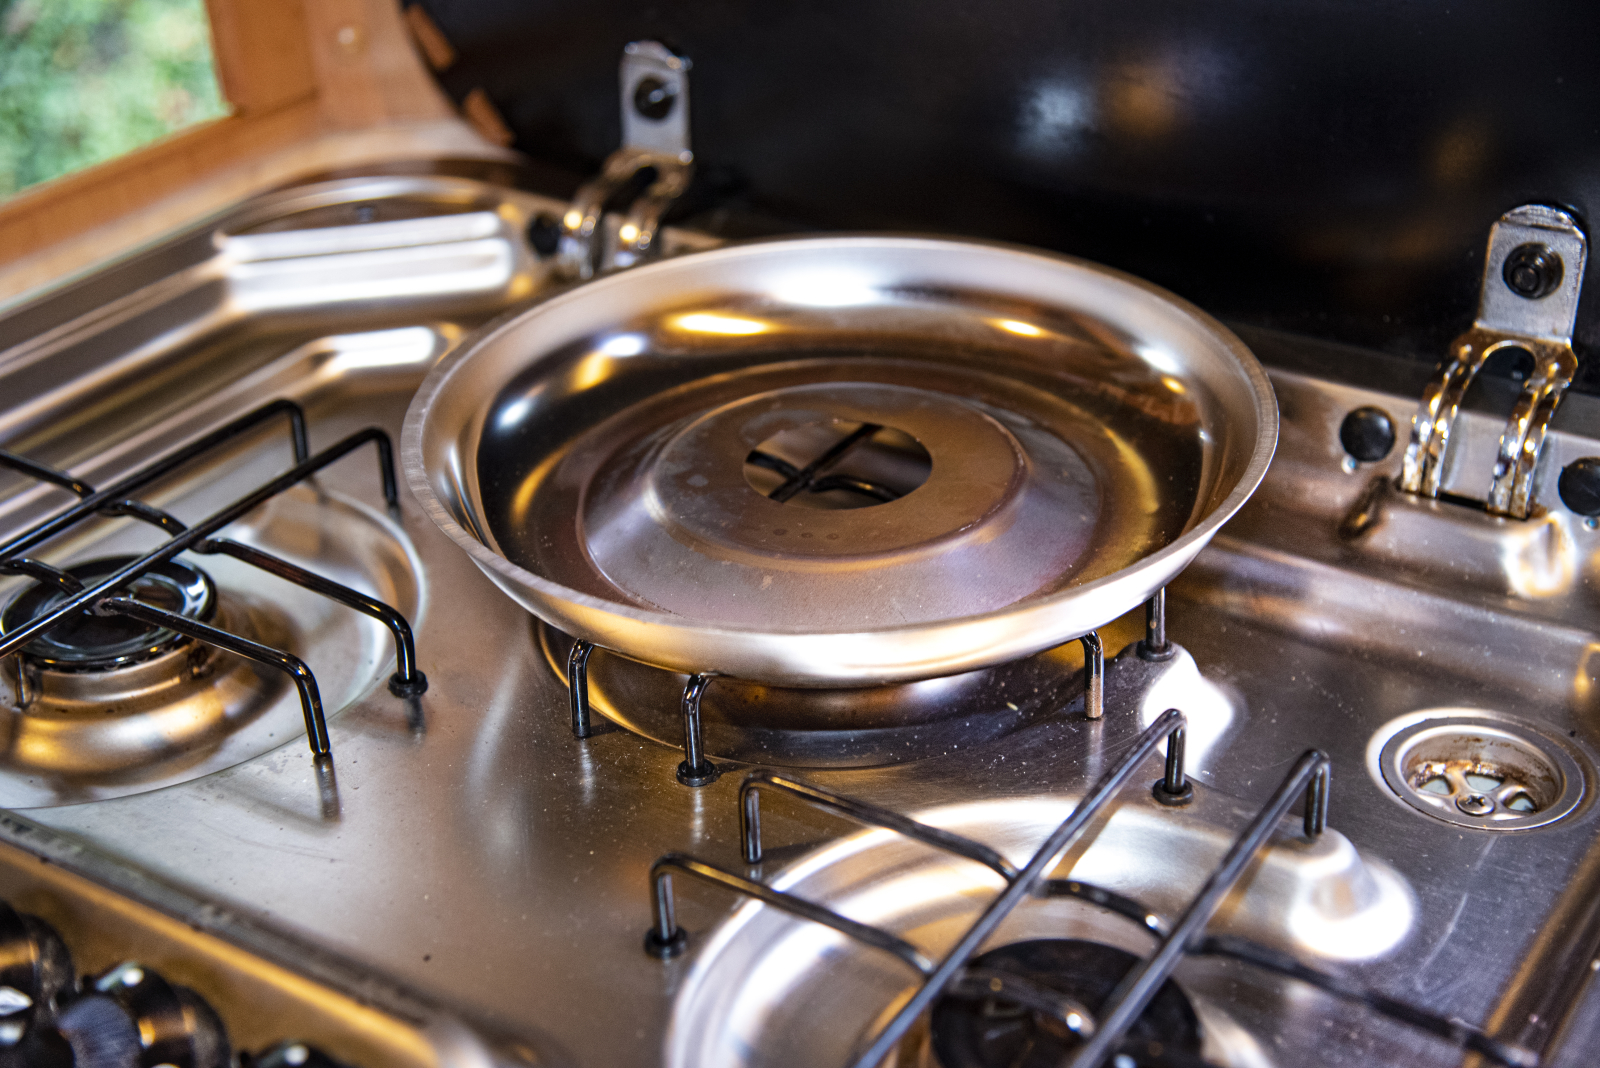 Das Untergestell sorgt für die Unterhitze. Es ist aus Edelstahl und verteilt die Hitze der Kochplatte gleichmäßig.